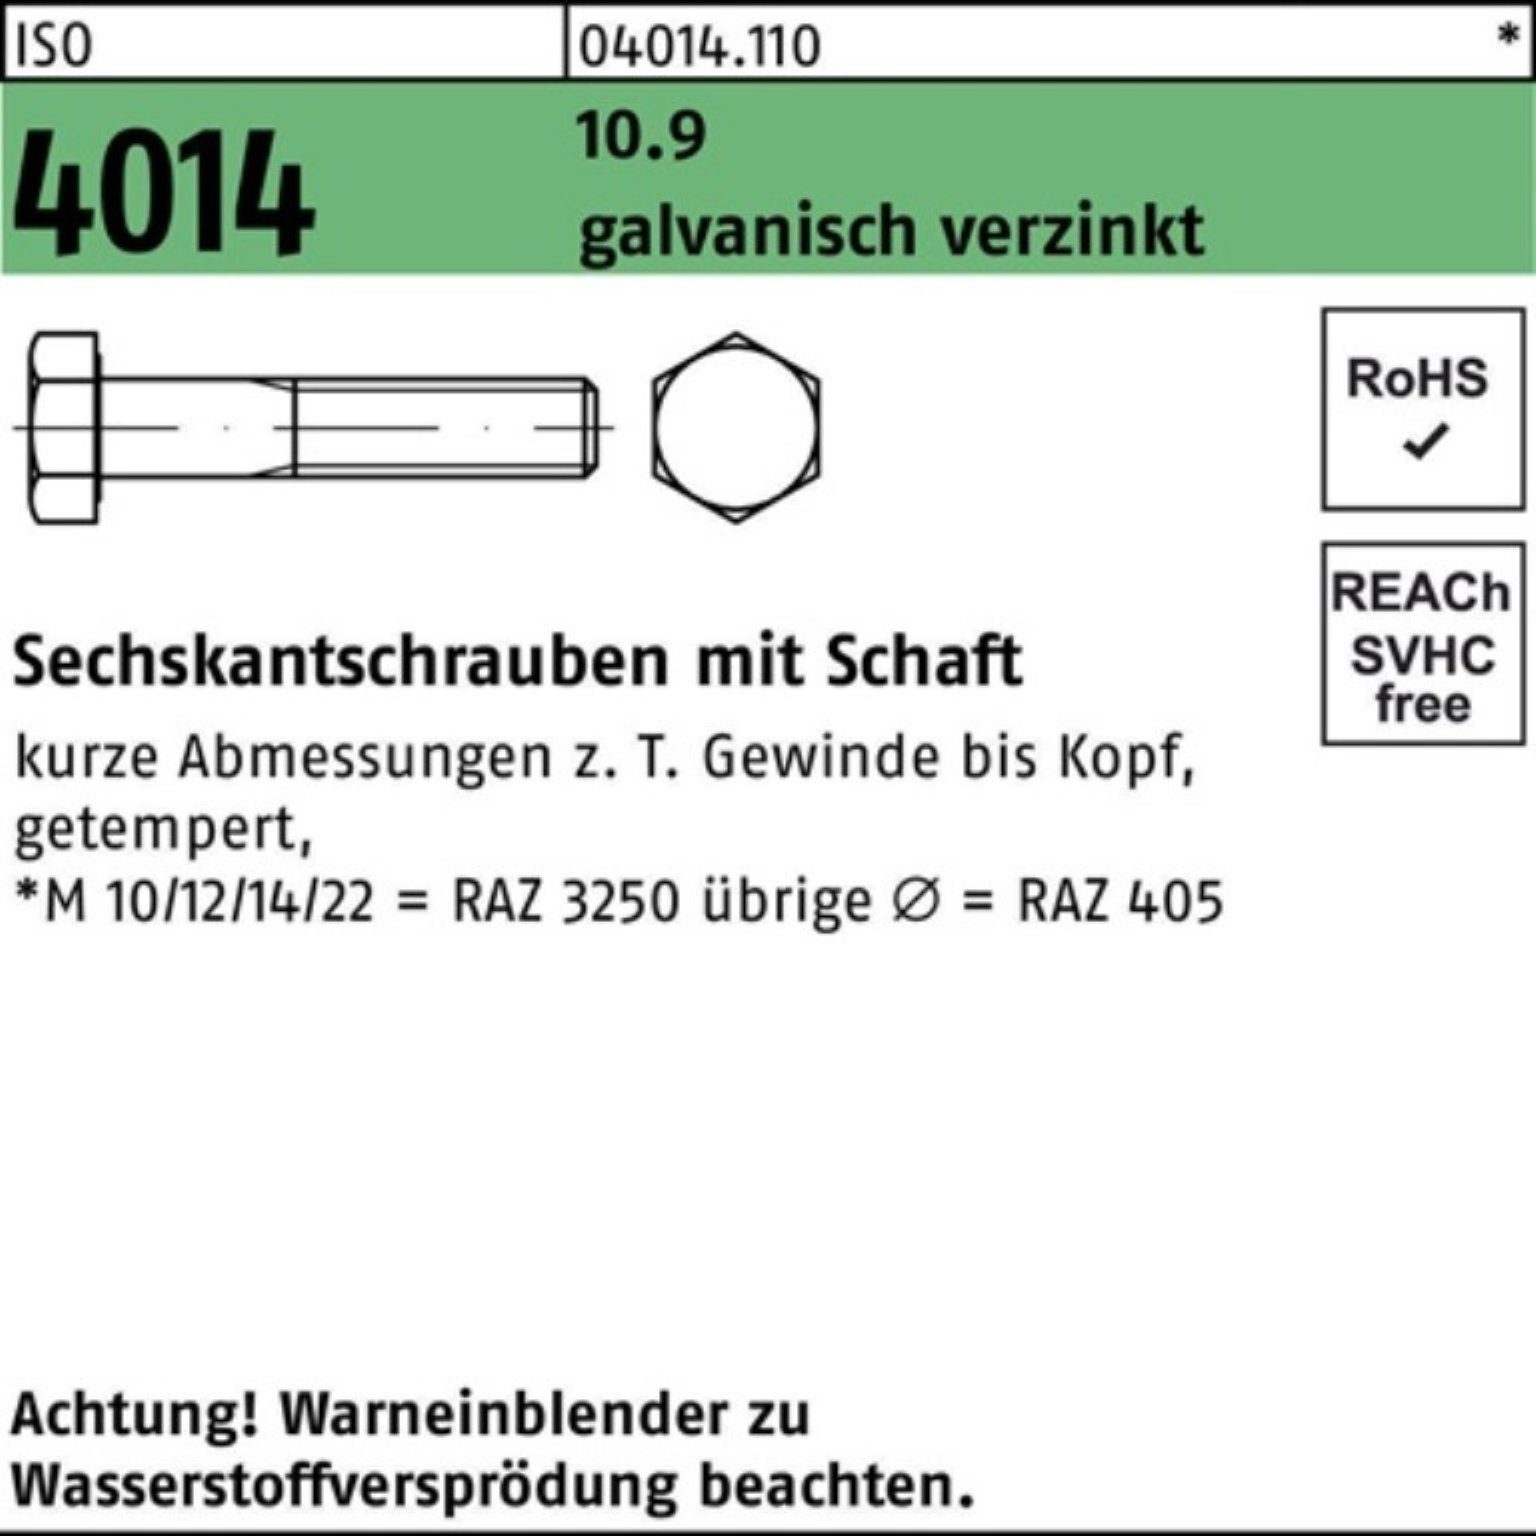 Schaft Bufab 10.9 4014 1 galv.verz. M8x 100er 130 Pack ISO Sechskantschraube Sechskantschraube